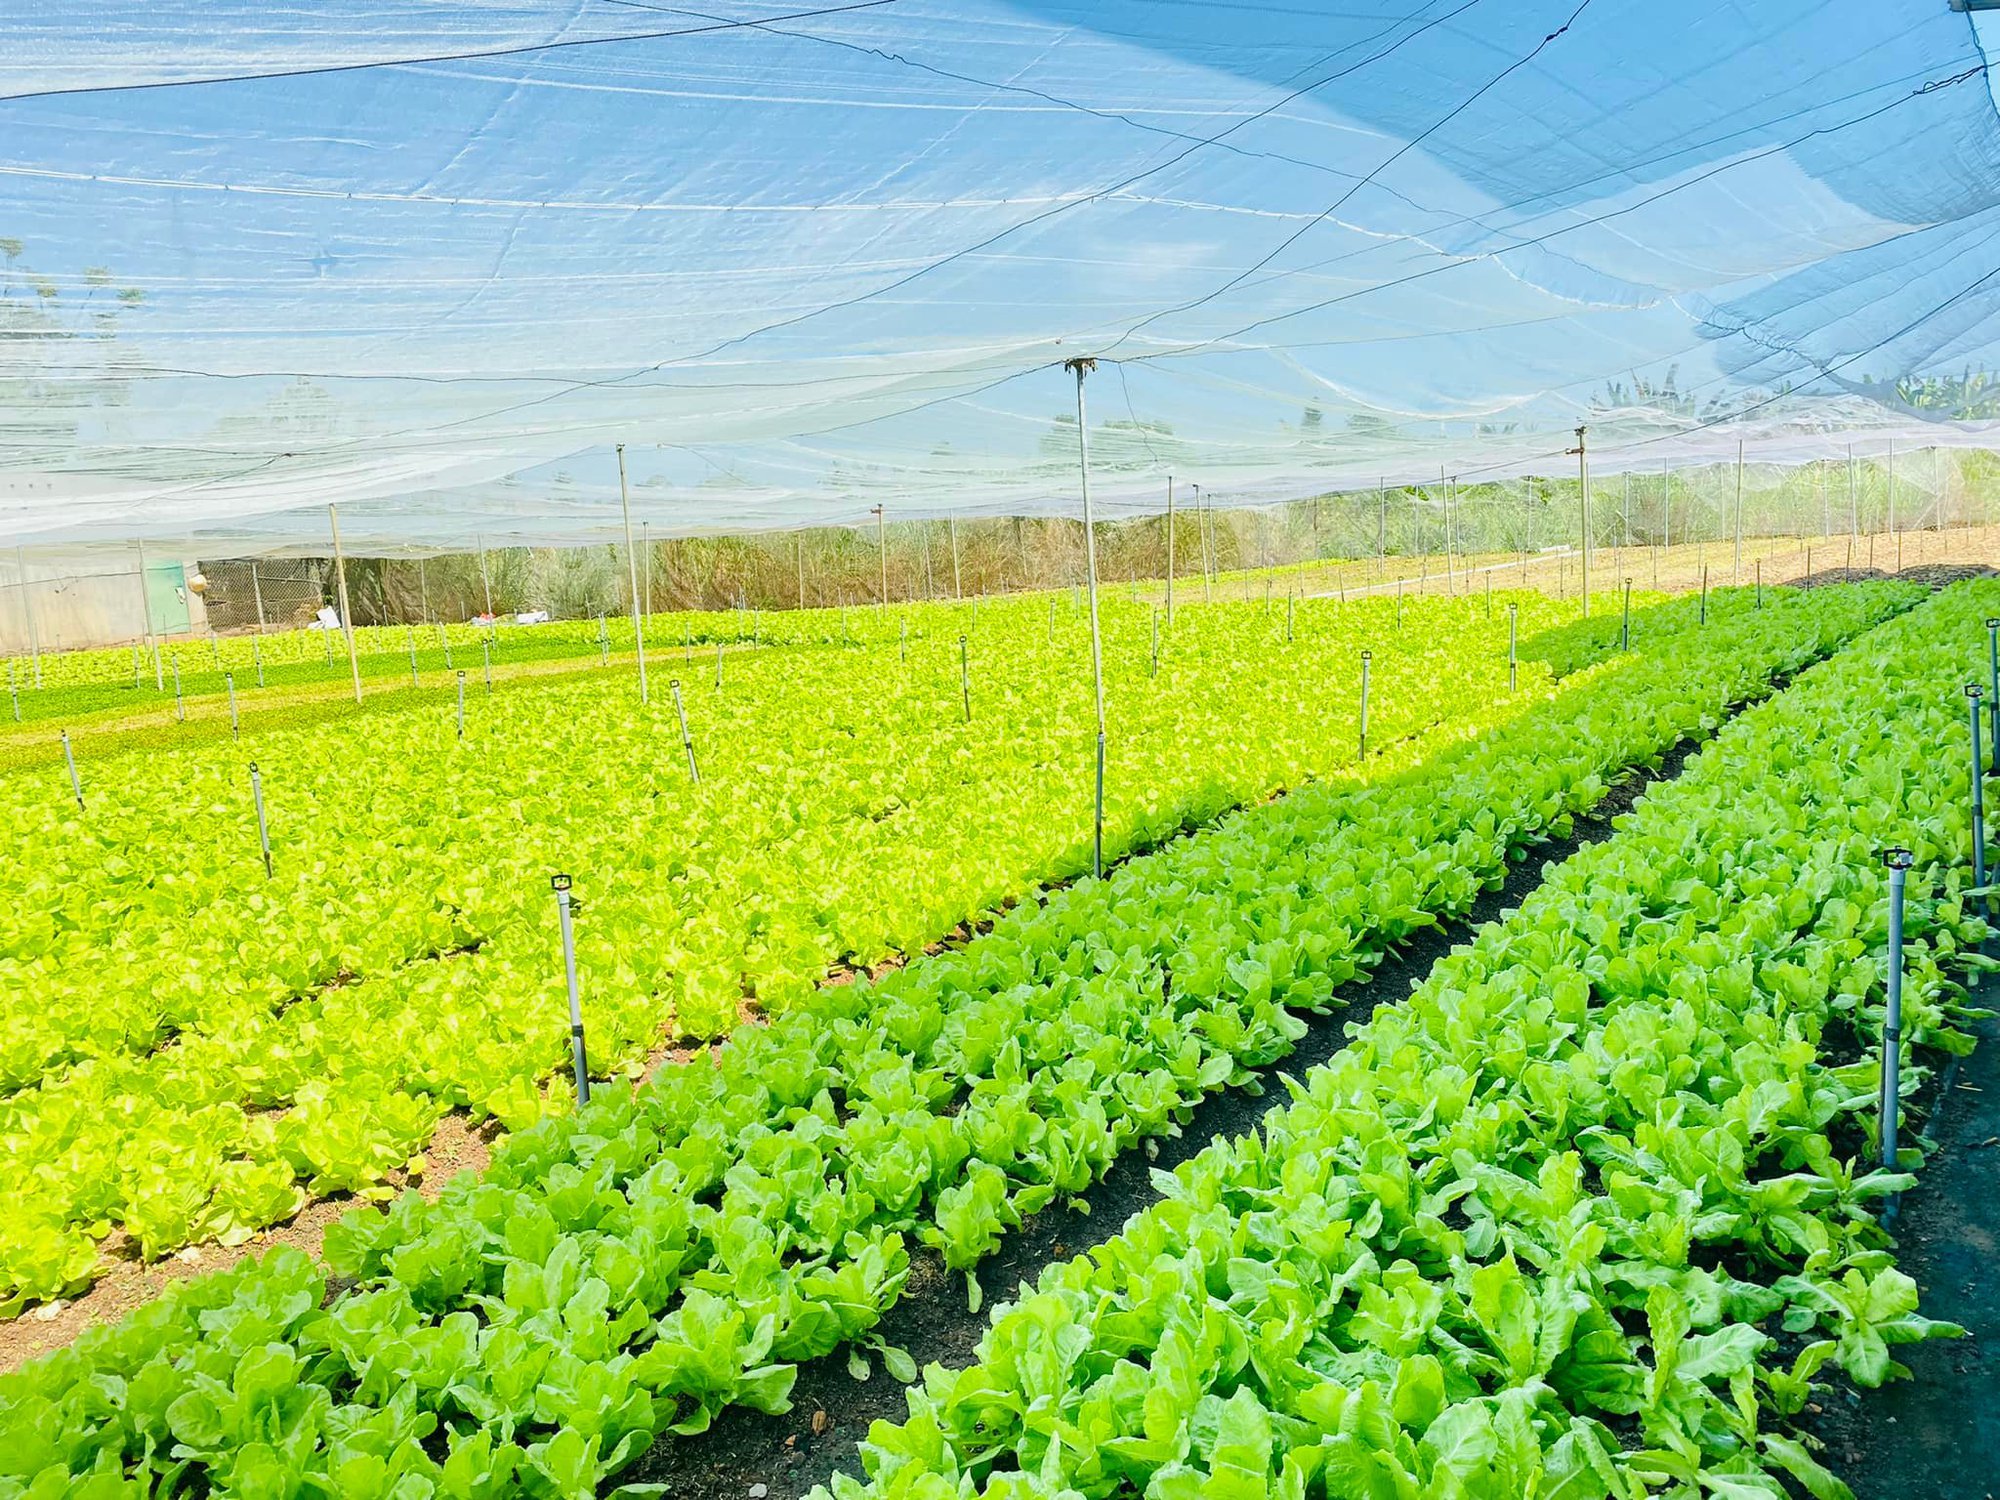 Đồng Nai: Trao 1 tỷ đồng vốn Quỹ HTND cho nông dân xây dựng nhà lưới trồng rau sạch - Ảnh 2.